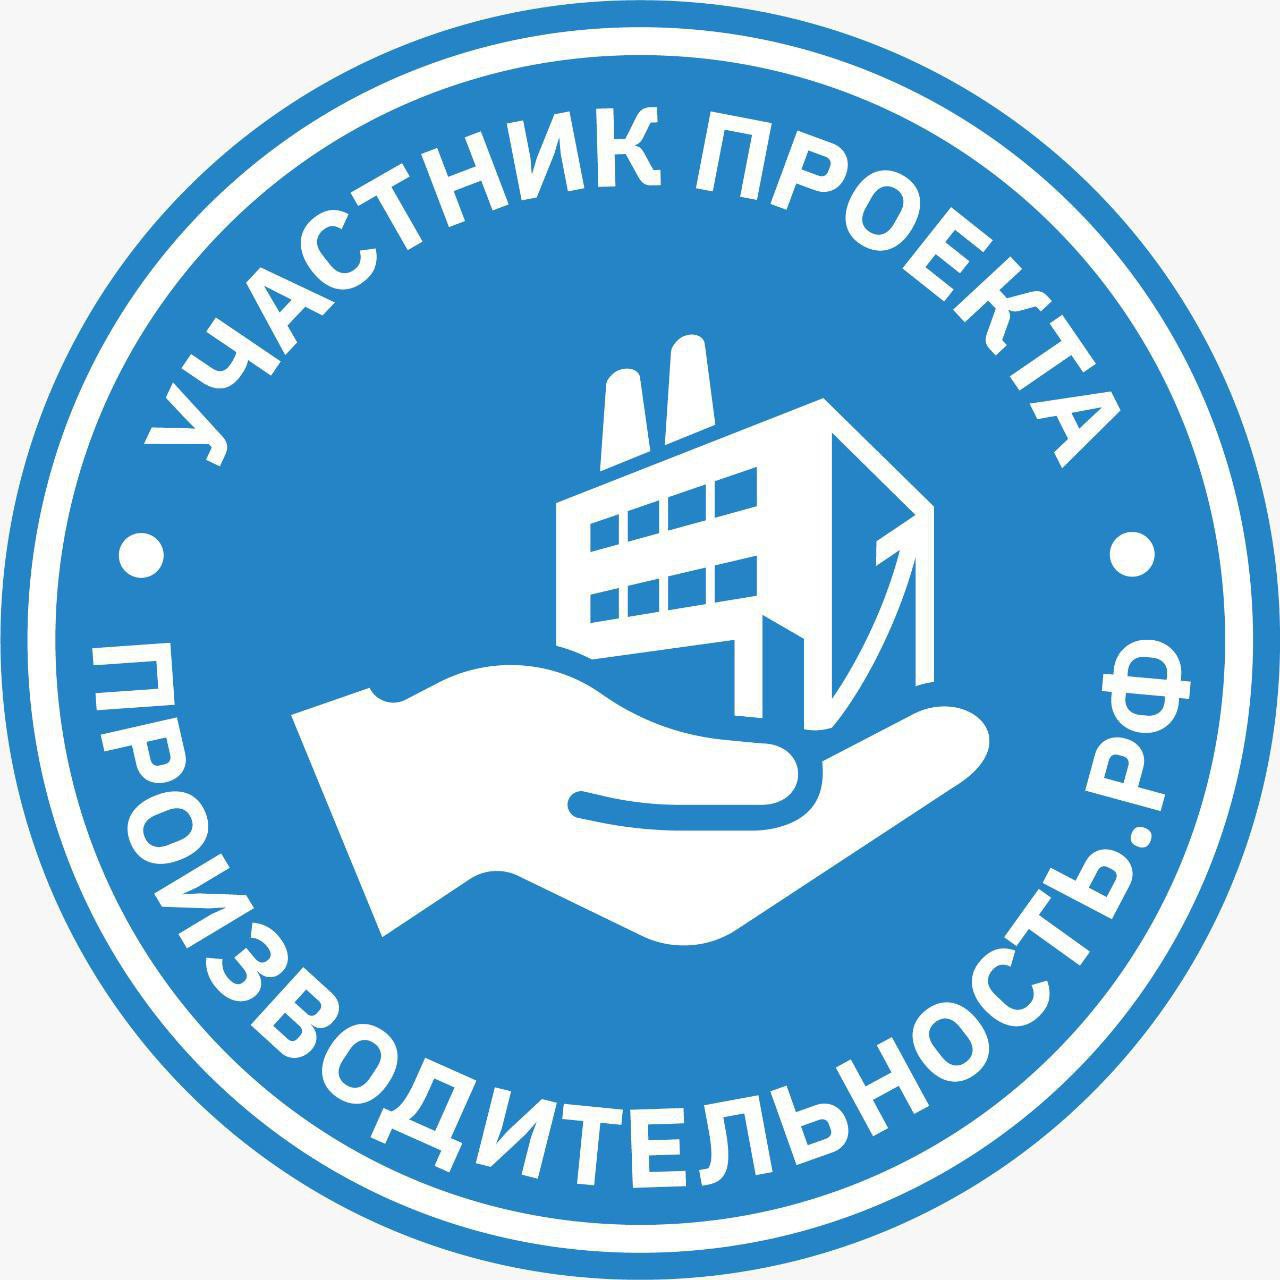 Нацпроект «Производительность труда» при поддержке Регионального центра компетенций (РЦК)